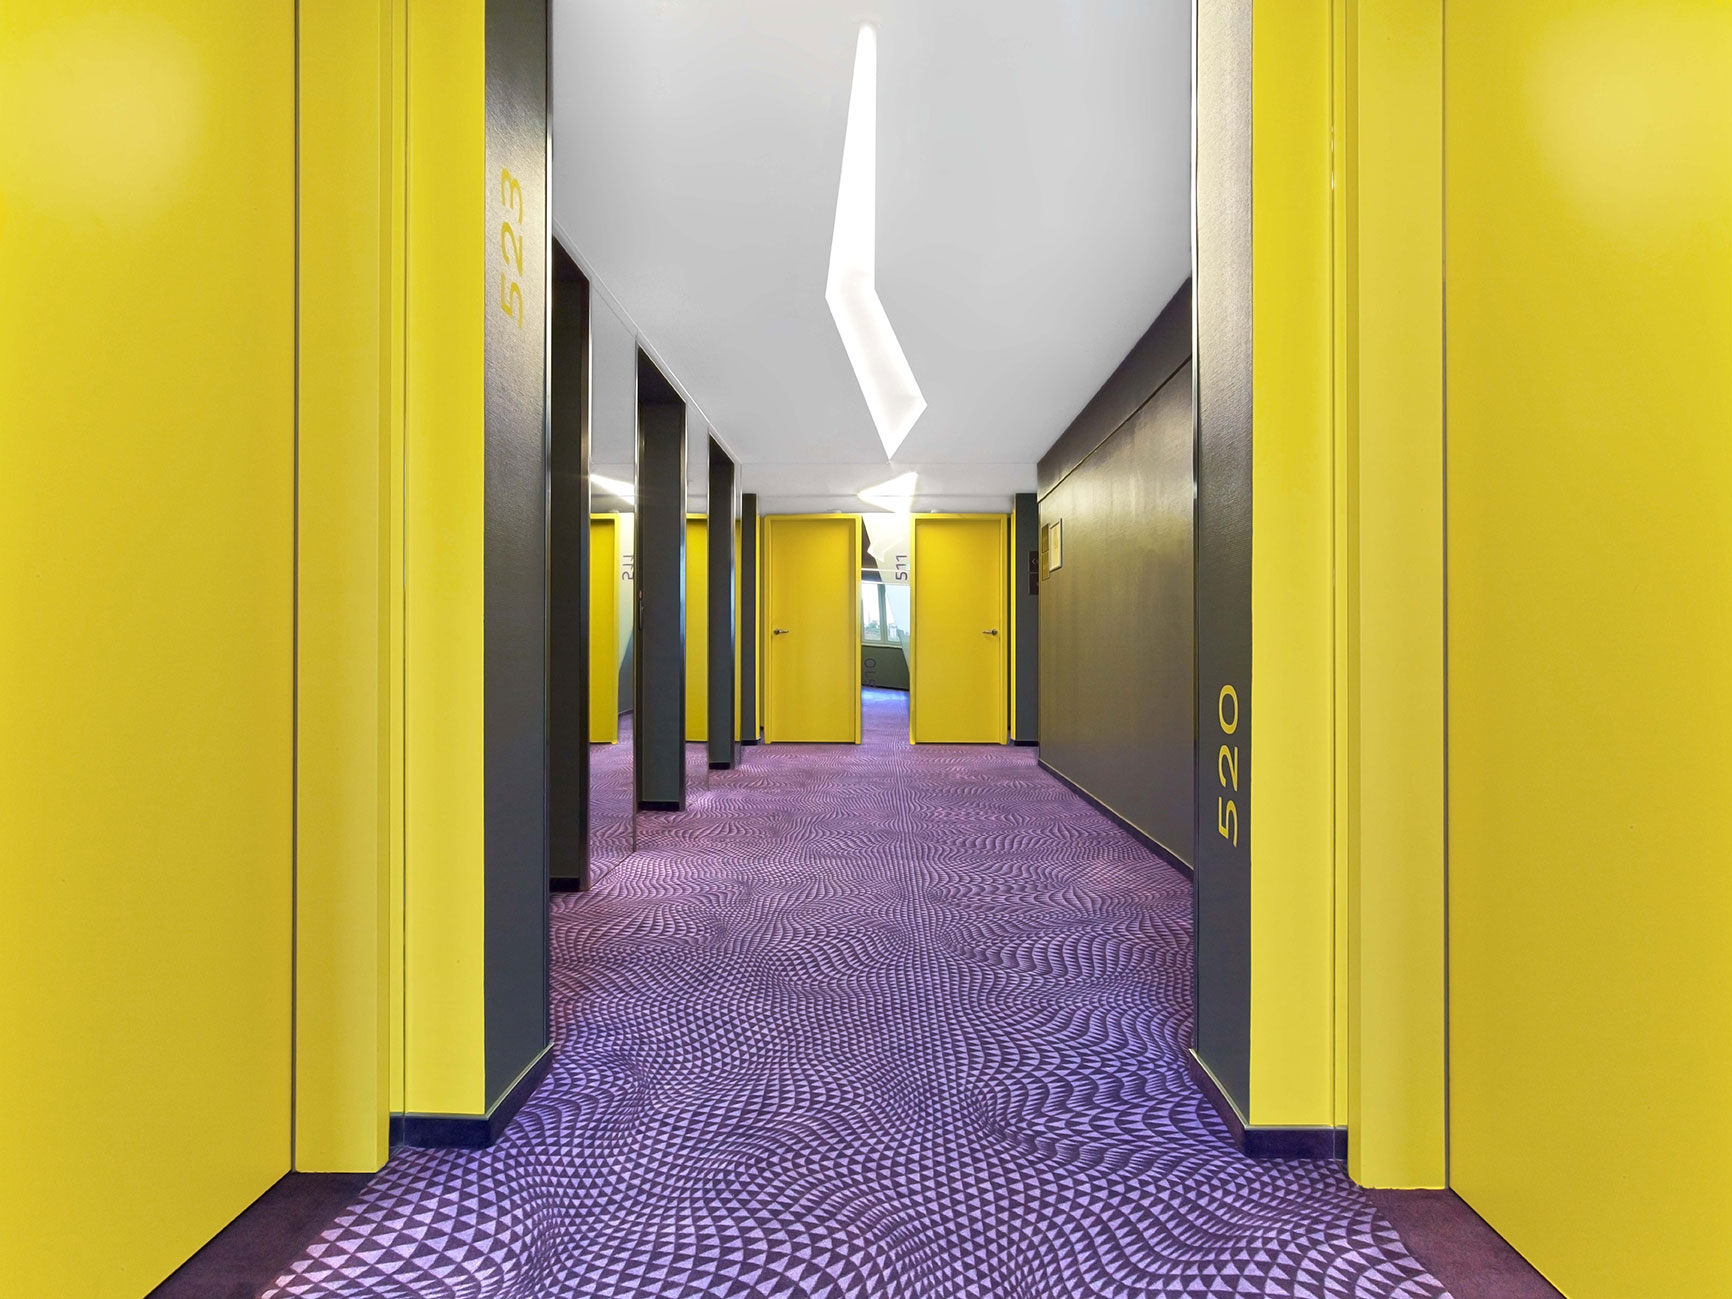 Flur des Designhotels mit violettem Boden und gelben Türen